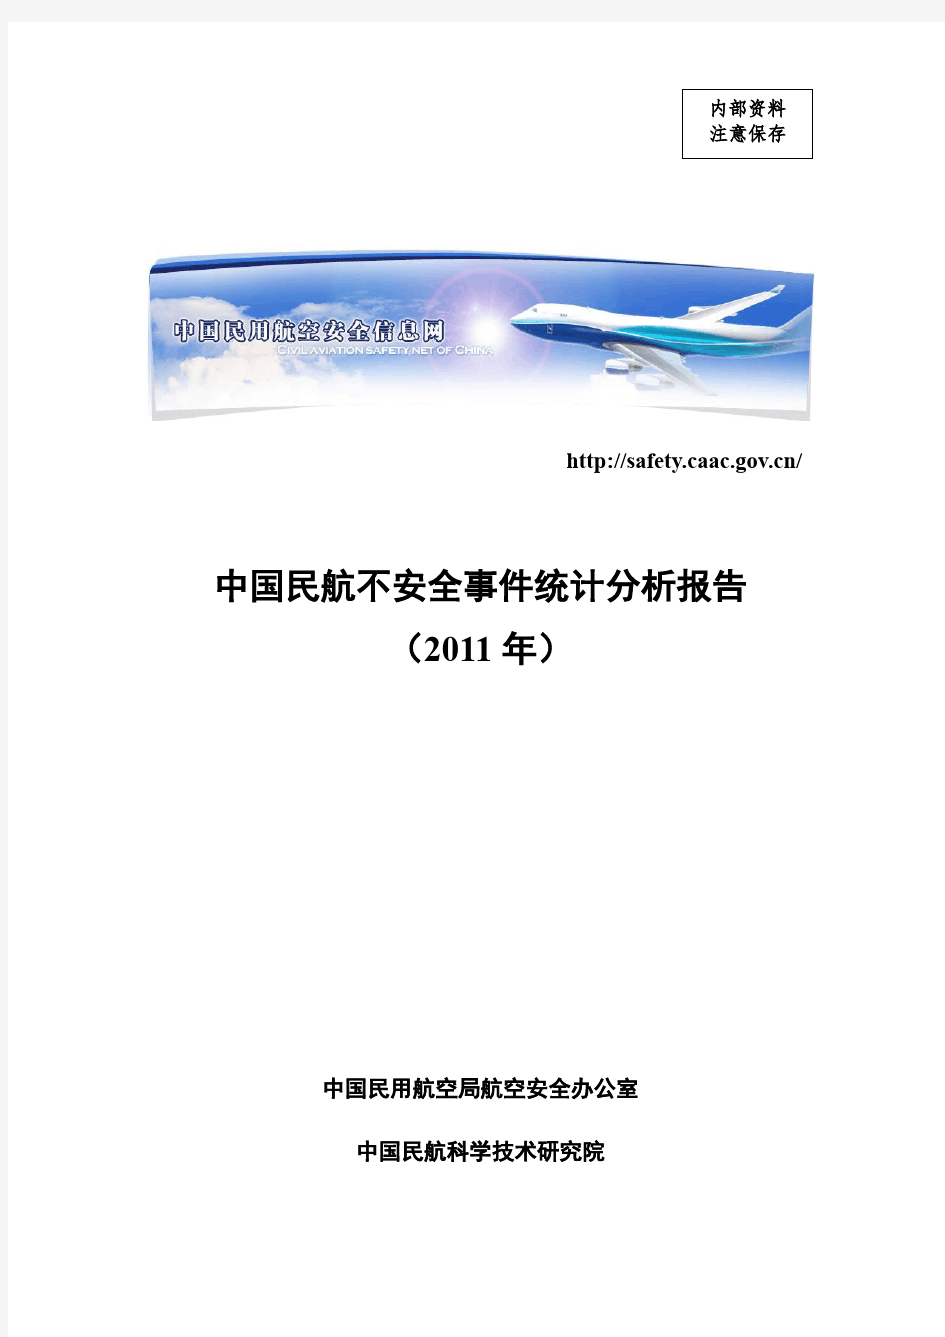 2011中国民航不安全事件统计分析报告